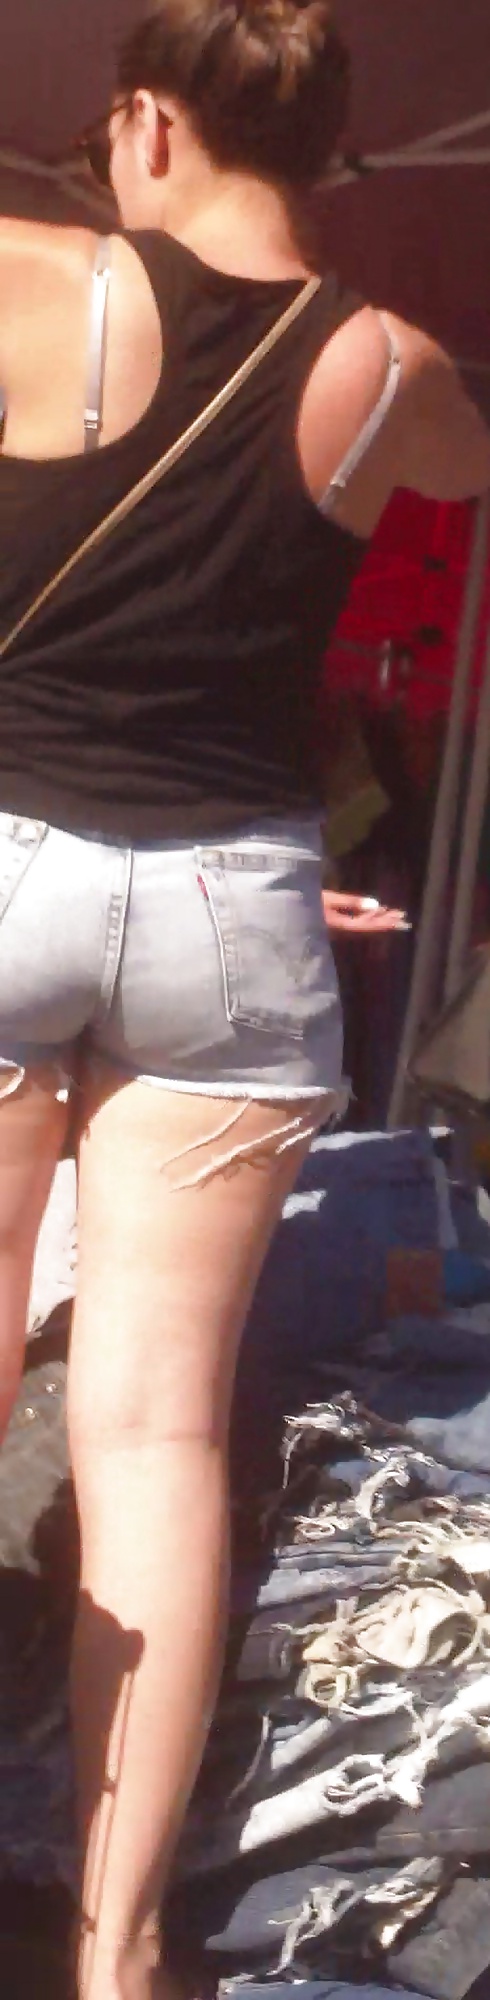 Popular teen girls ass & butt in jeans Part 6 #32009617